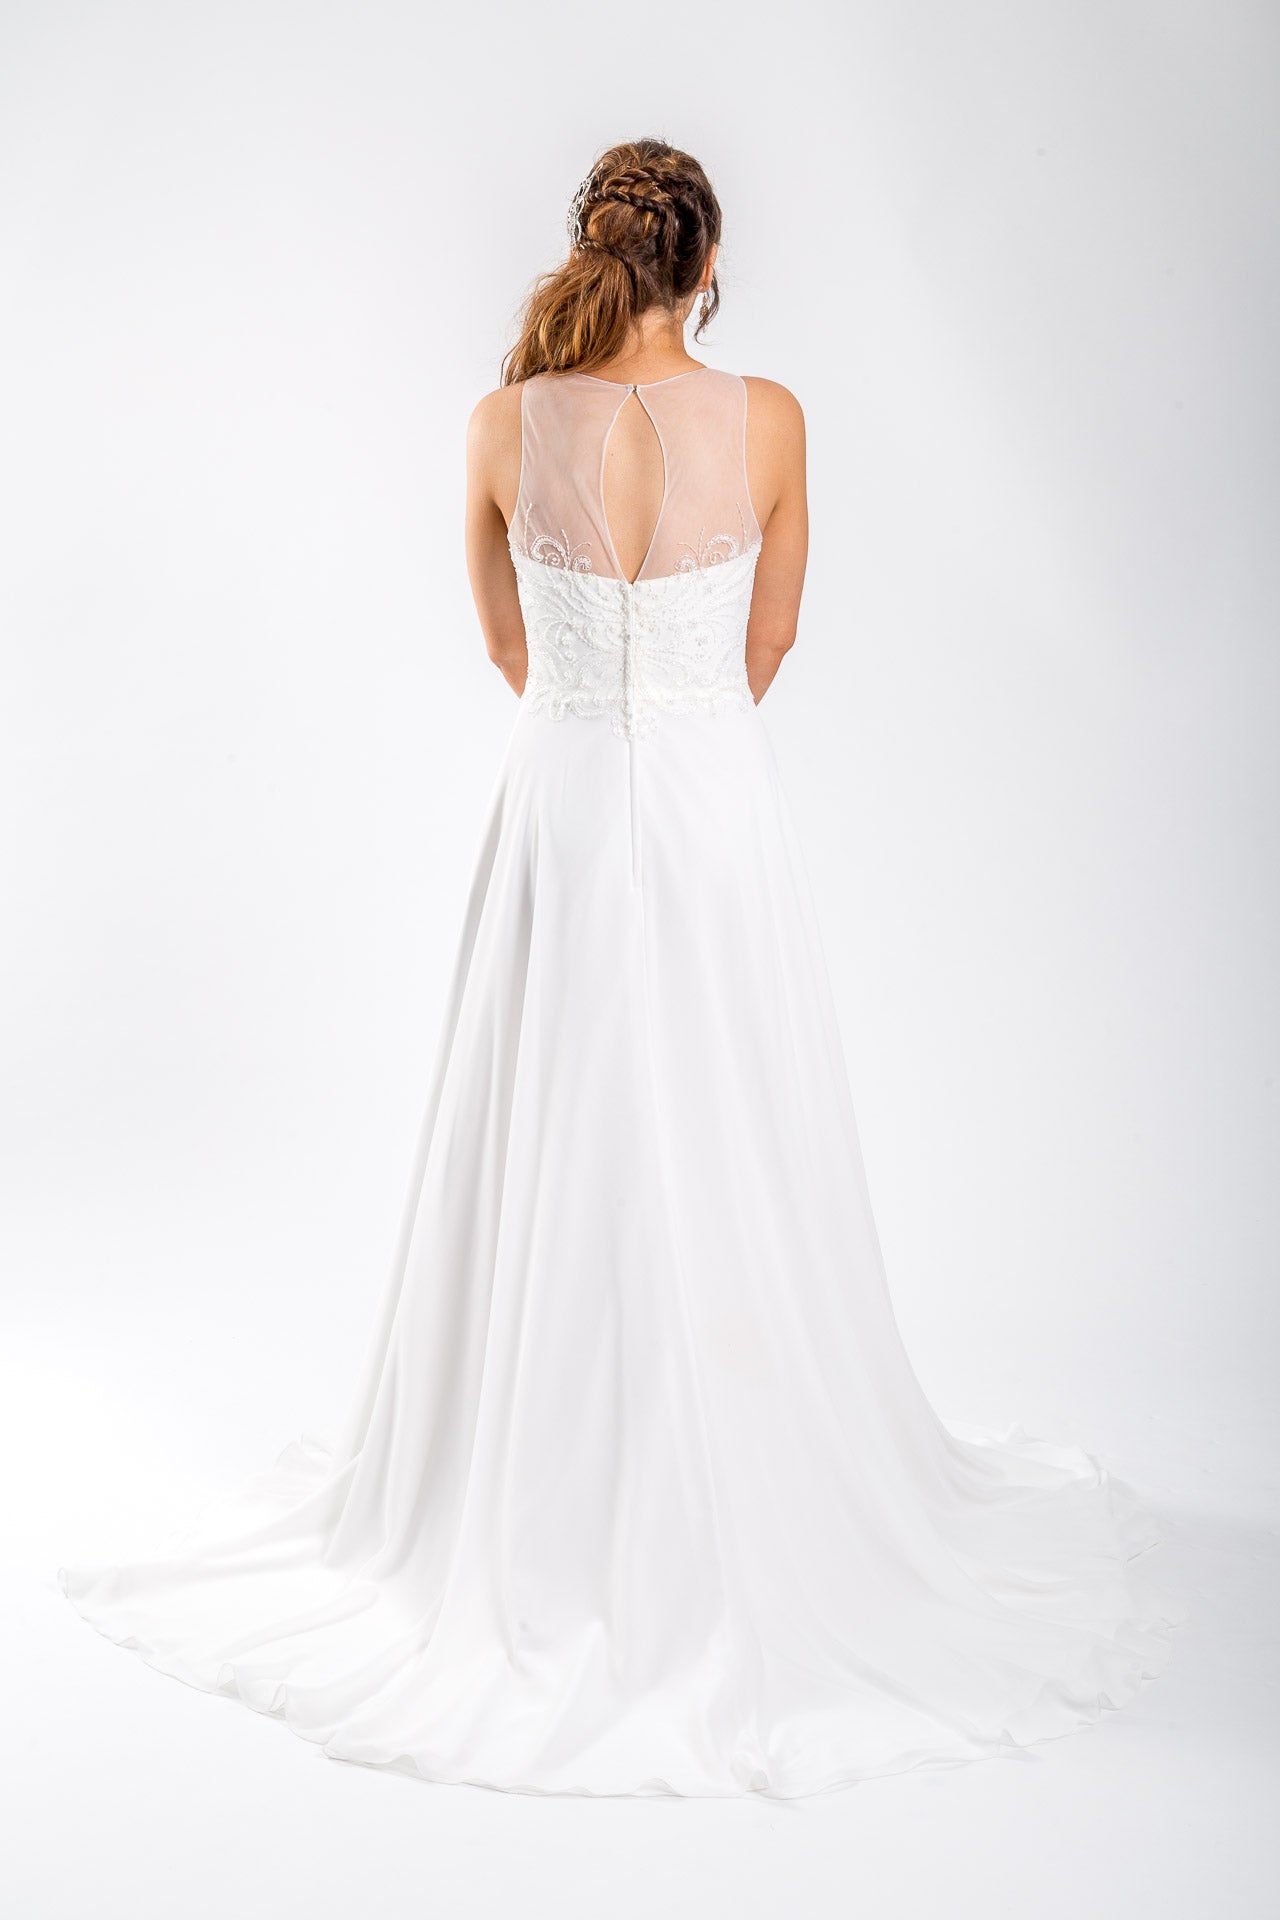 *NEW* Designer Wedding Gown - #1082